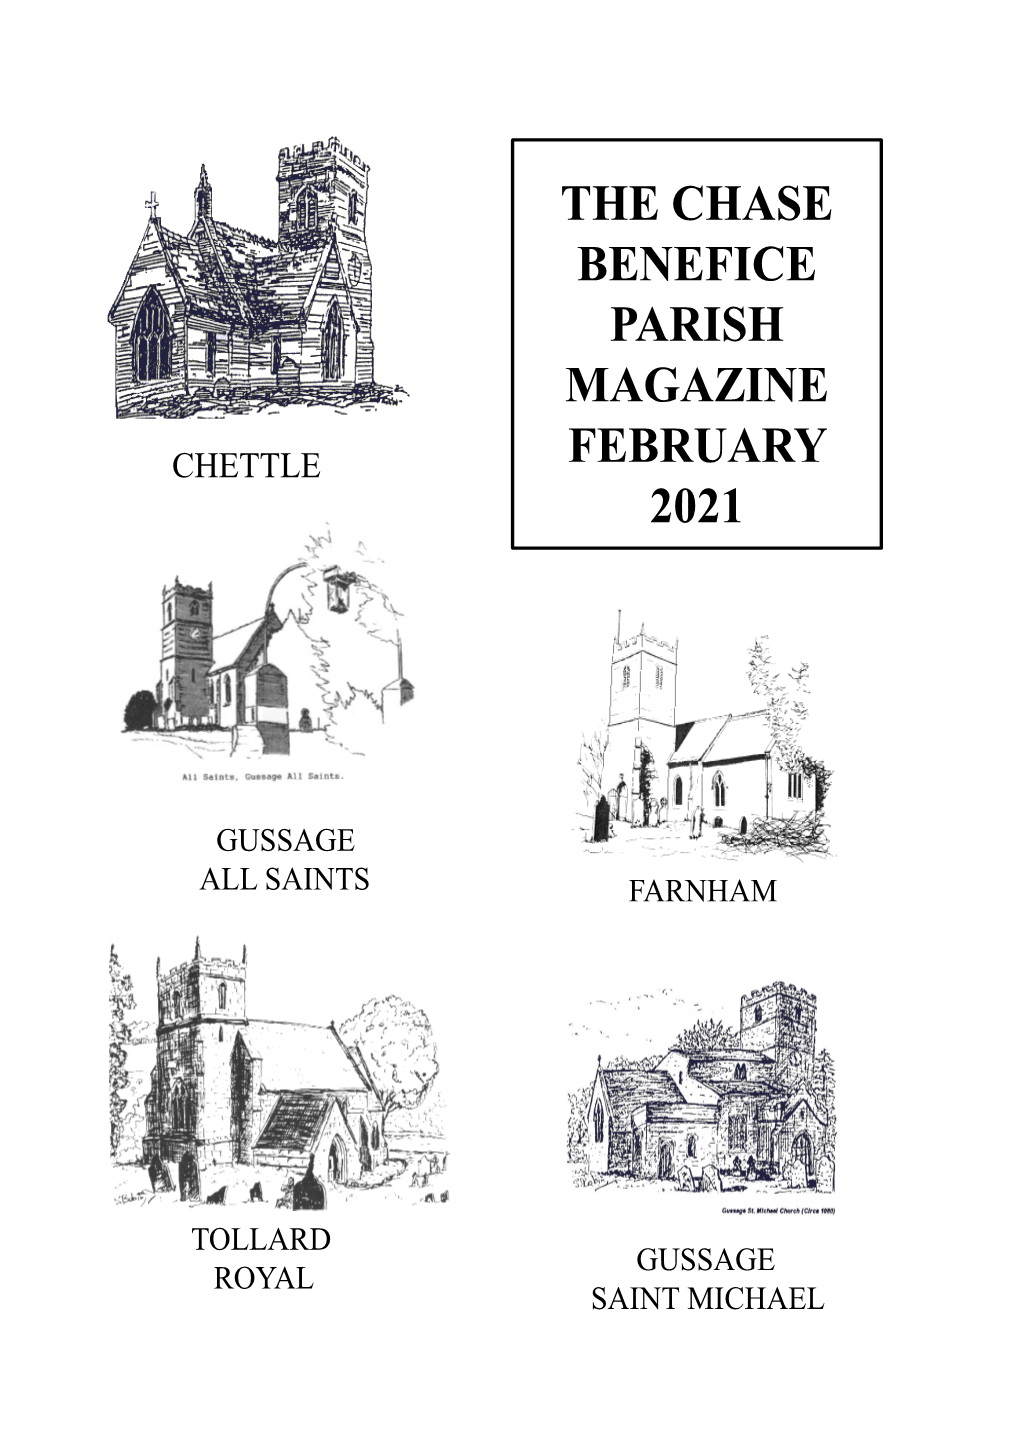 The Chase Benefice Parish Magazine February 2021